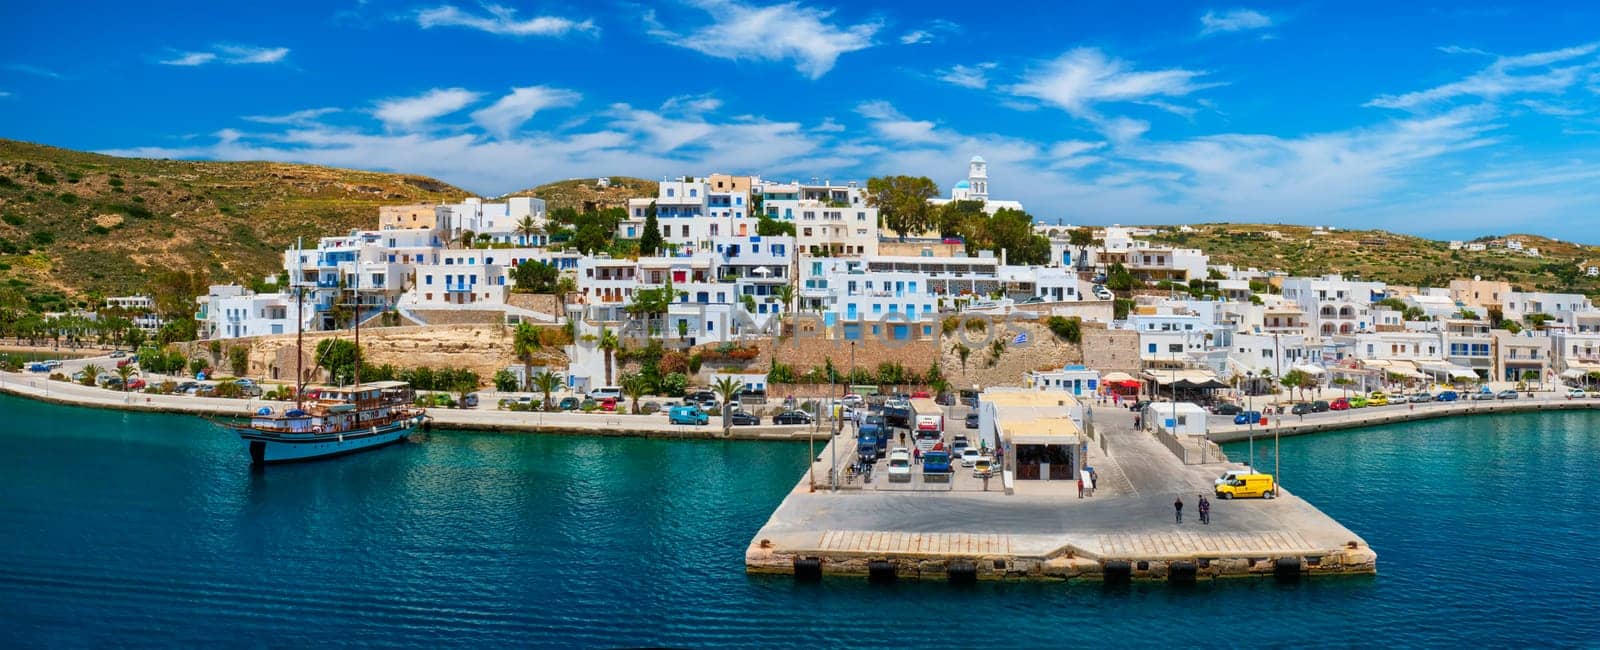 Adamantas Adamas harbor town of Milos island, Greece by dimol